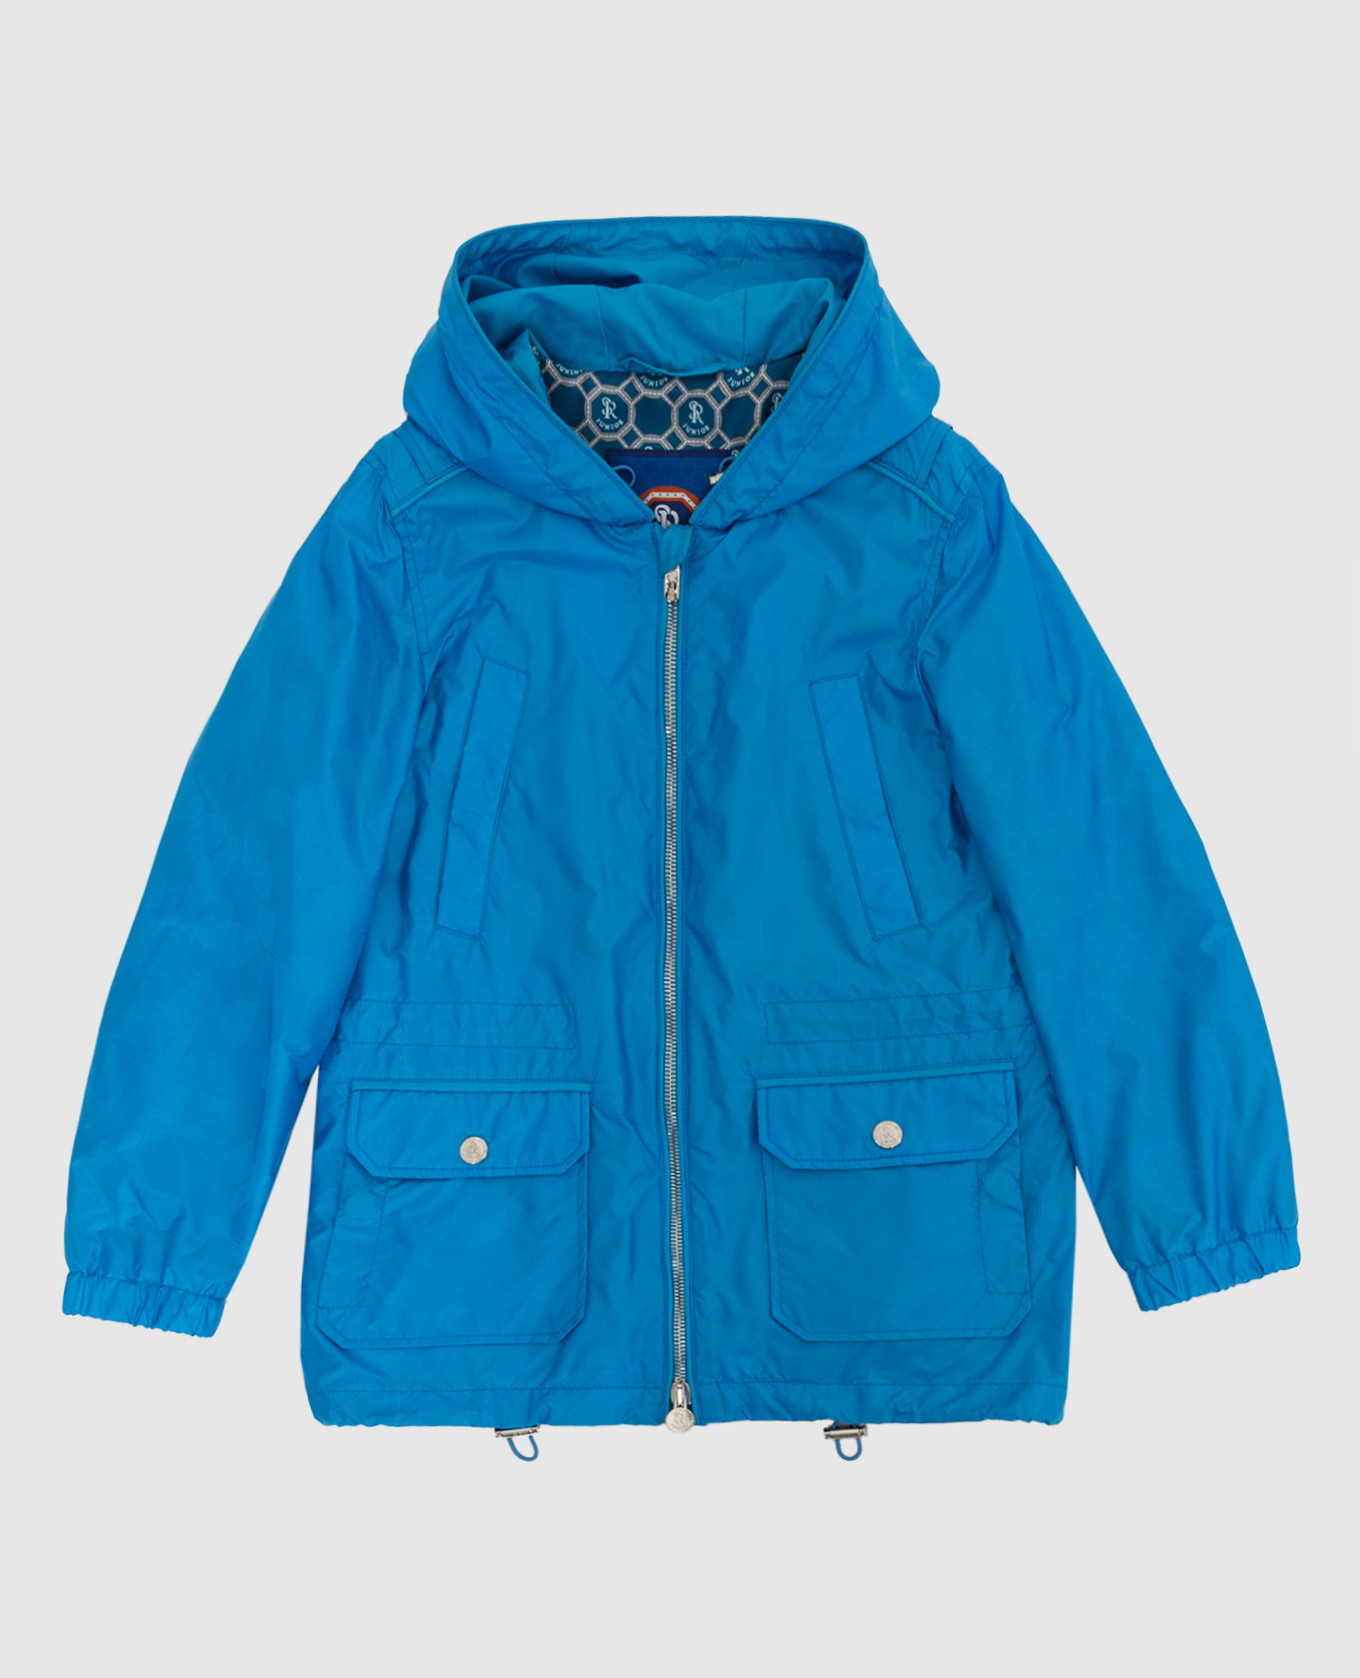 Children's light blue jacket in a pattern